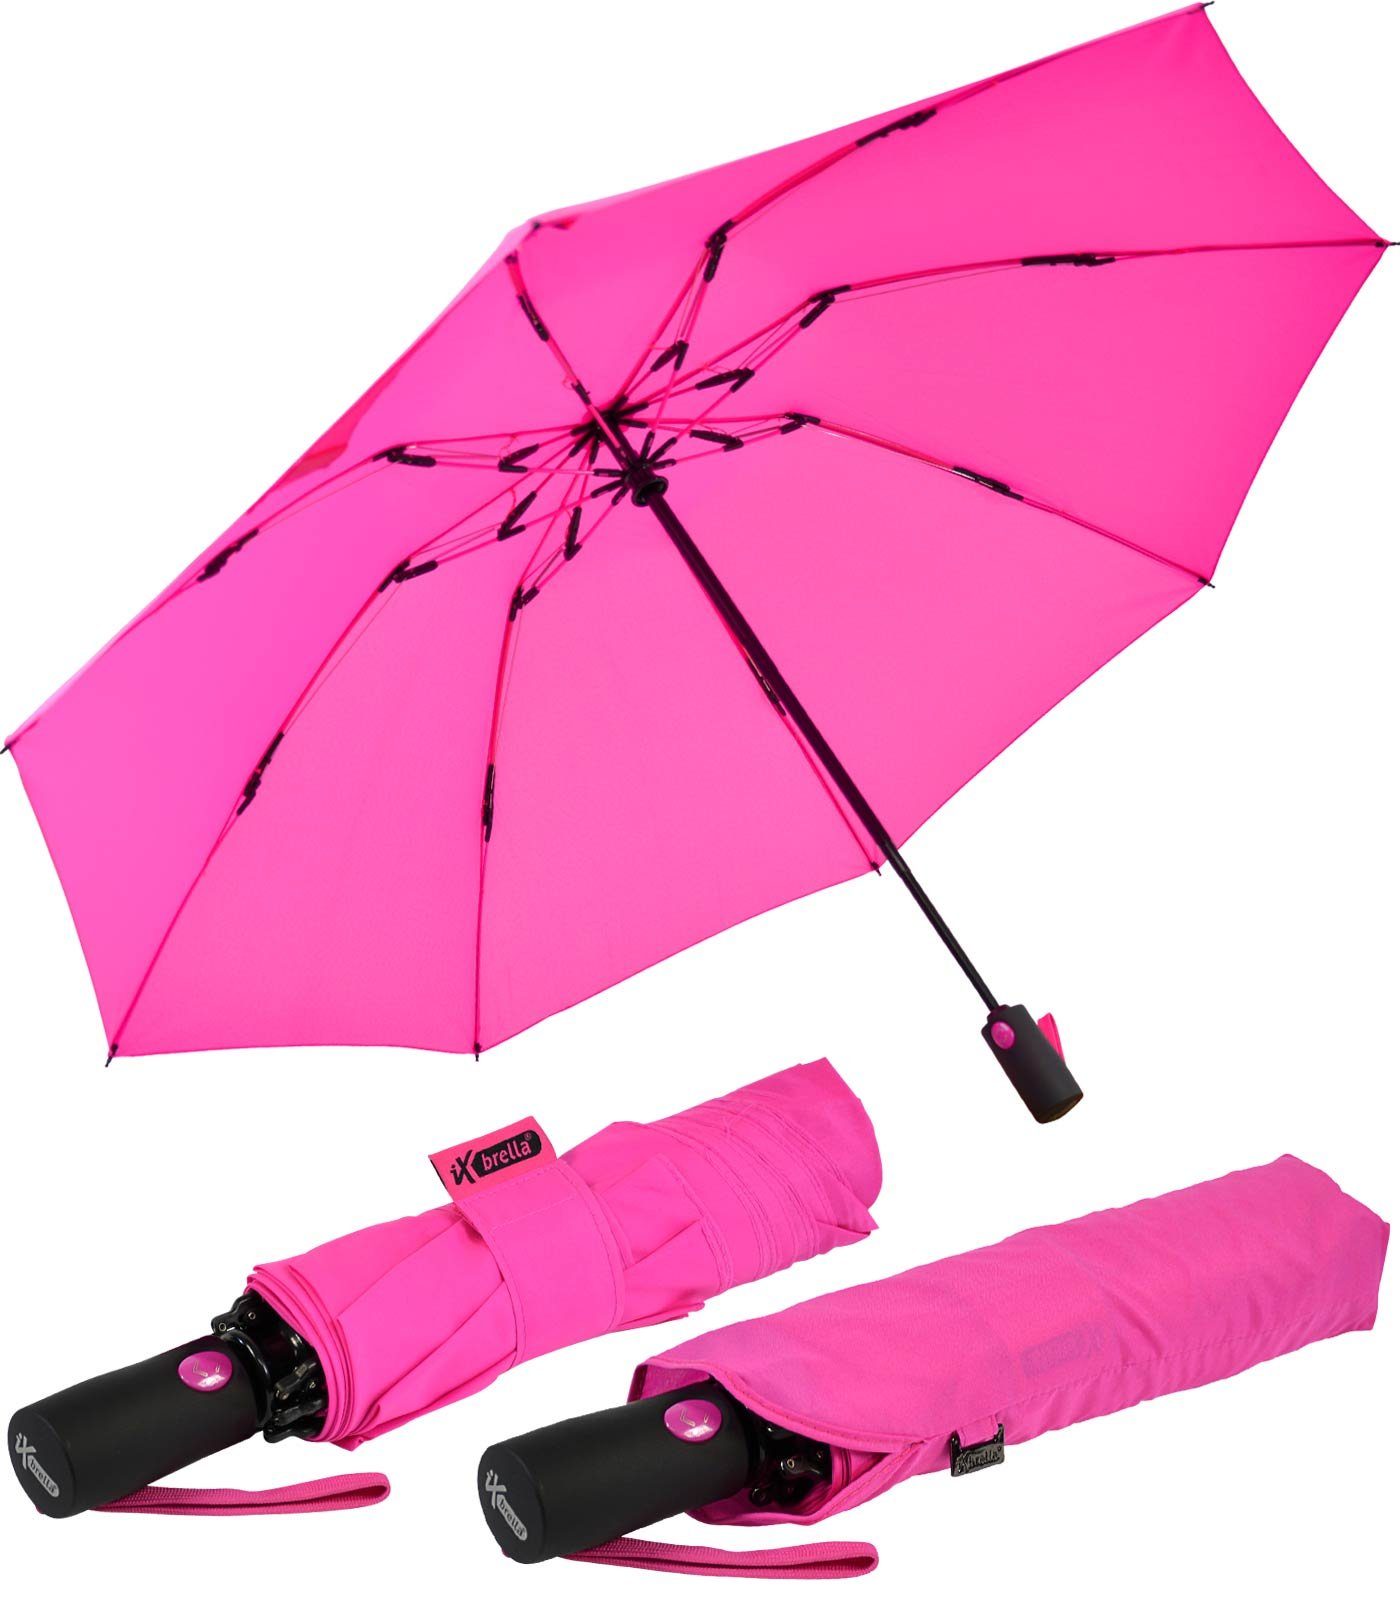 iX-brella Taschenregenschirm Reverse umgekehrt öffnender Fiberglas-Automatiksch, mit bunten stabilen Speichen neon-pink